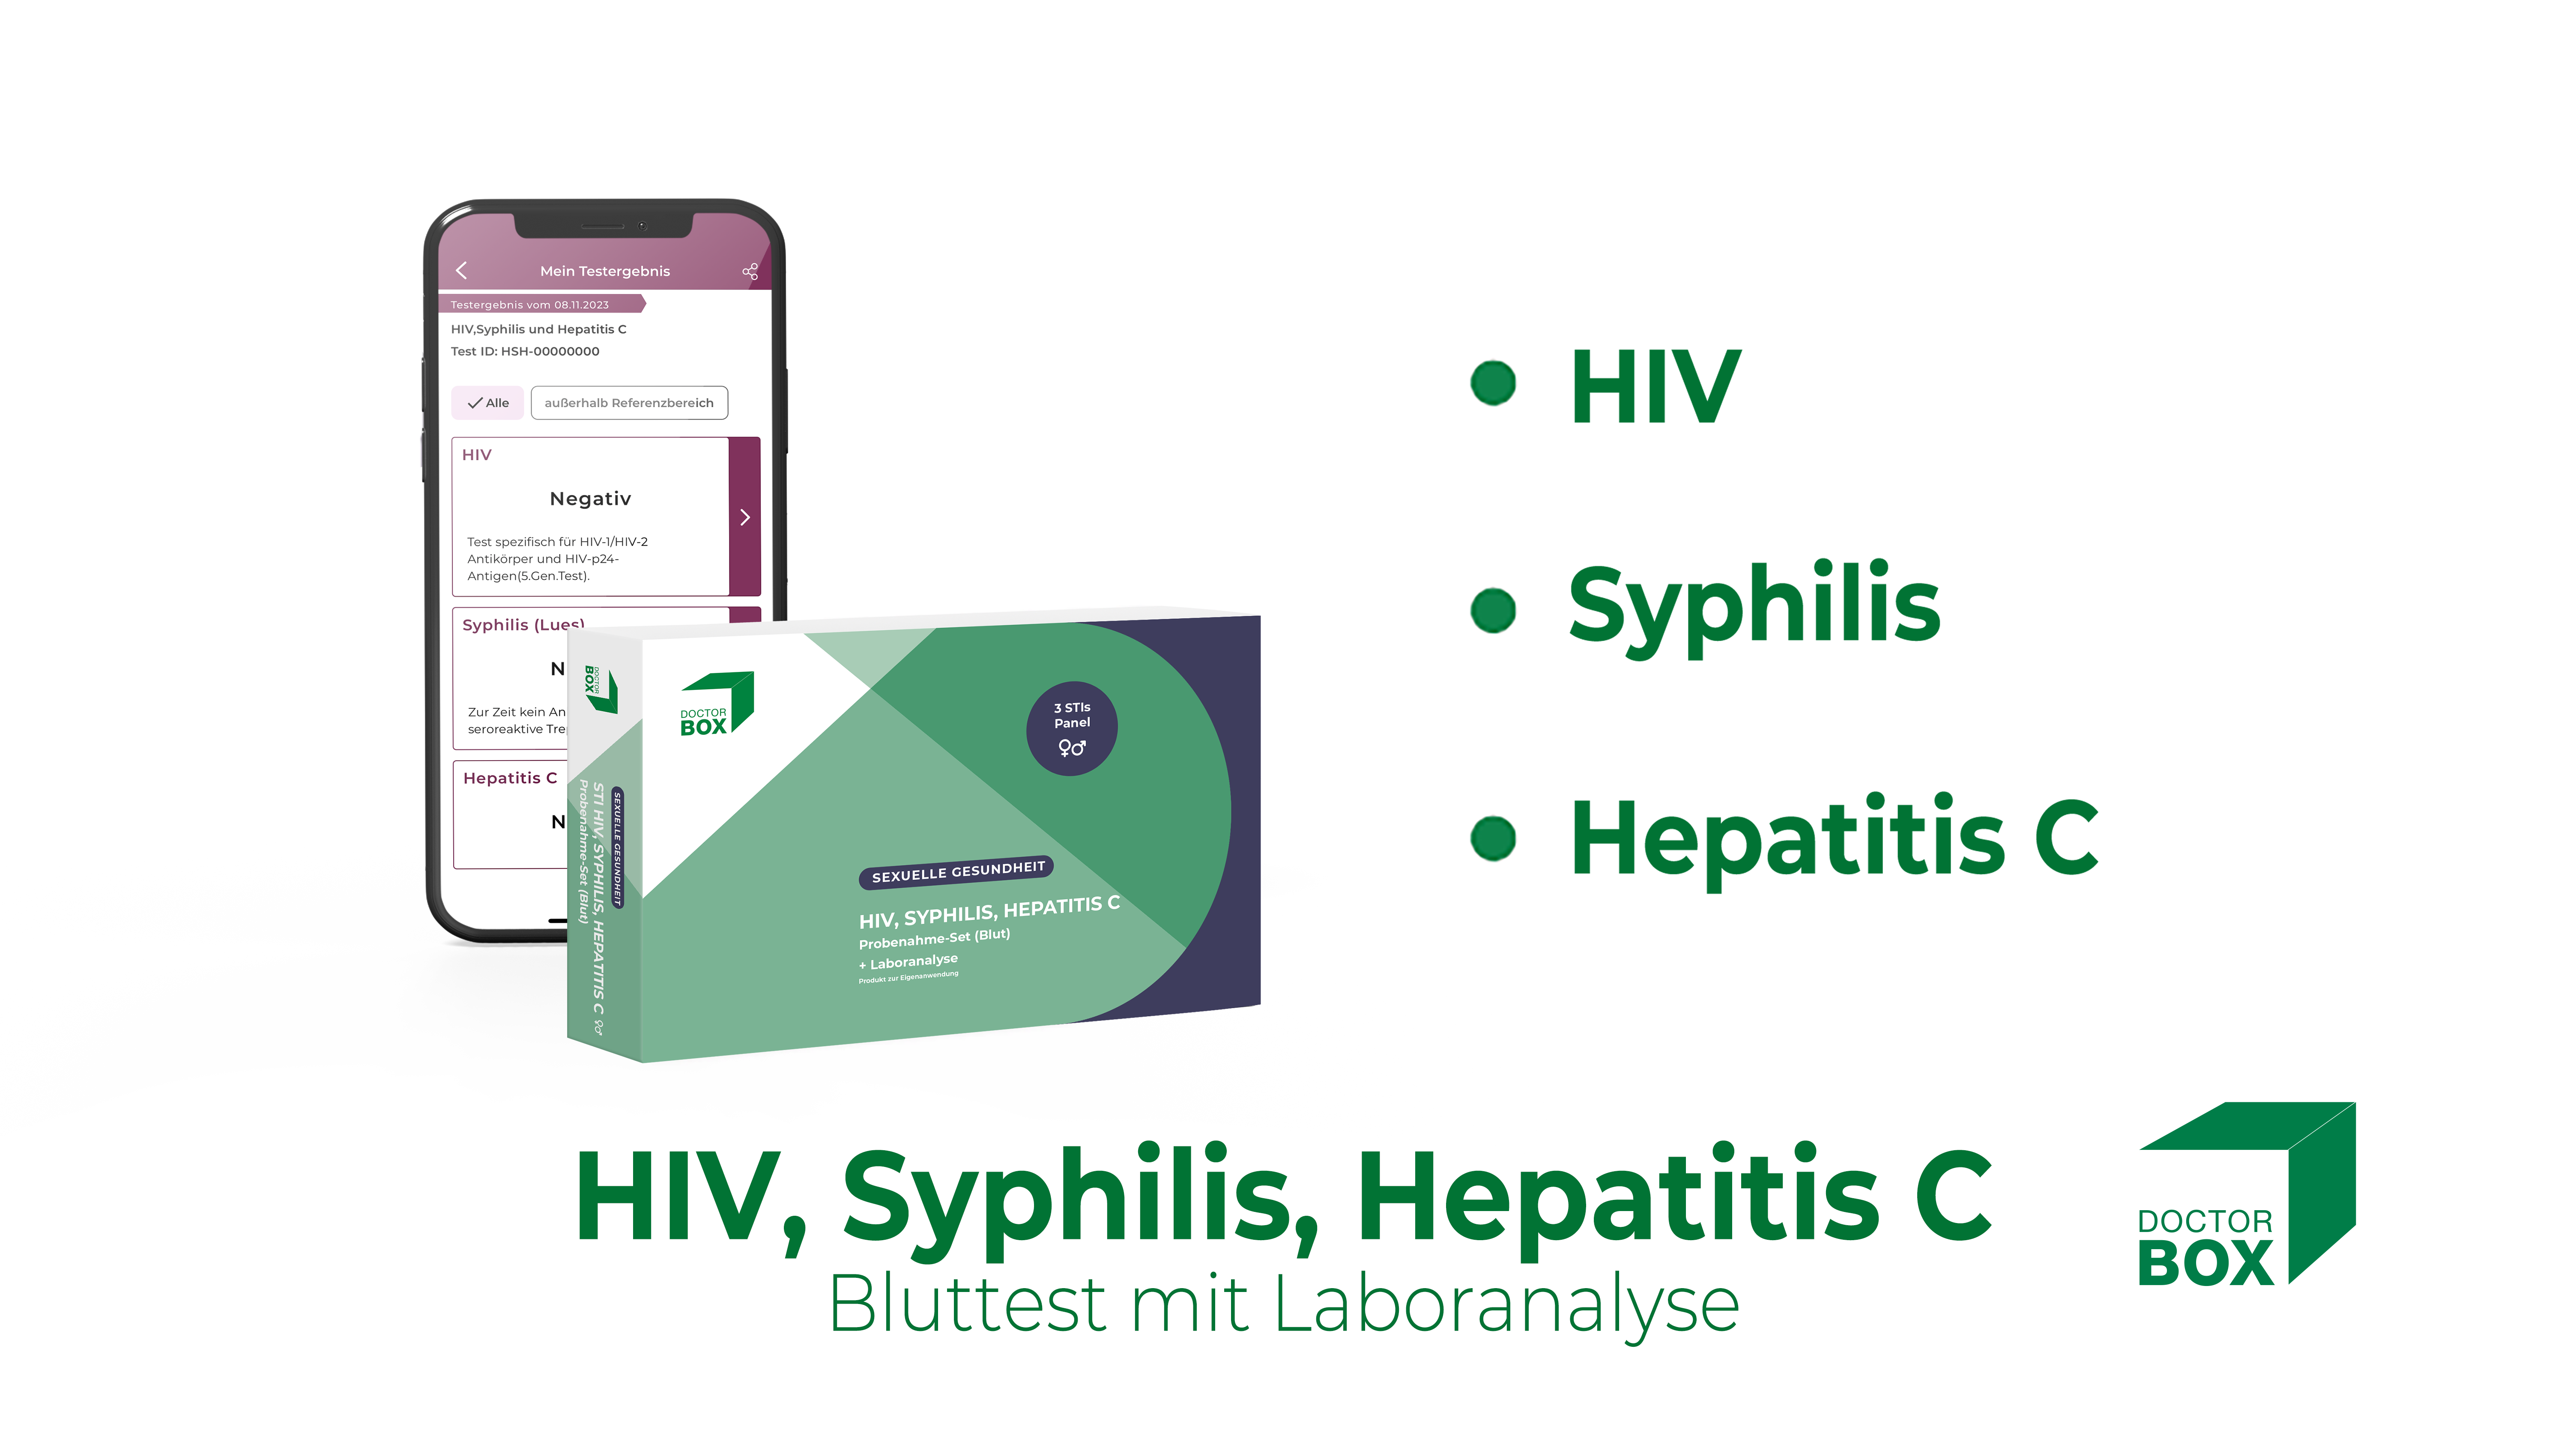 Test STI HIV, sifilide (sifilide), epatite C - test delle malattie sessualmente trasmissibili